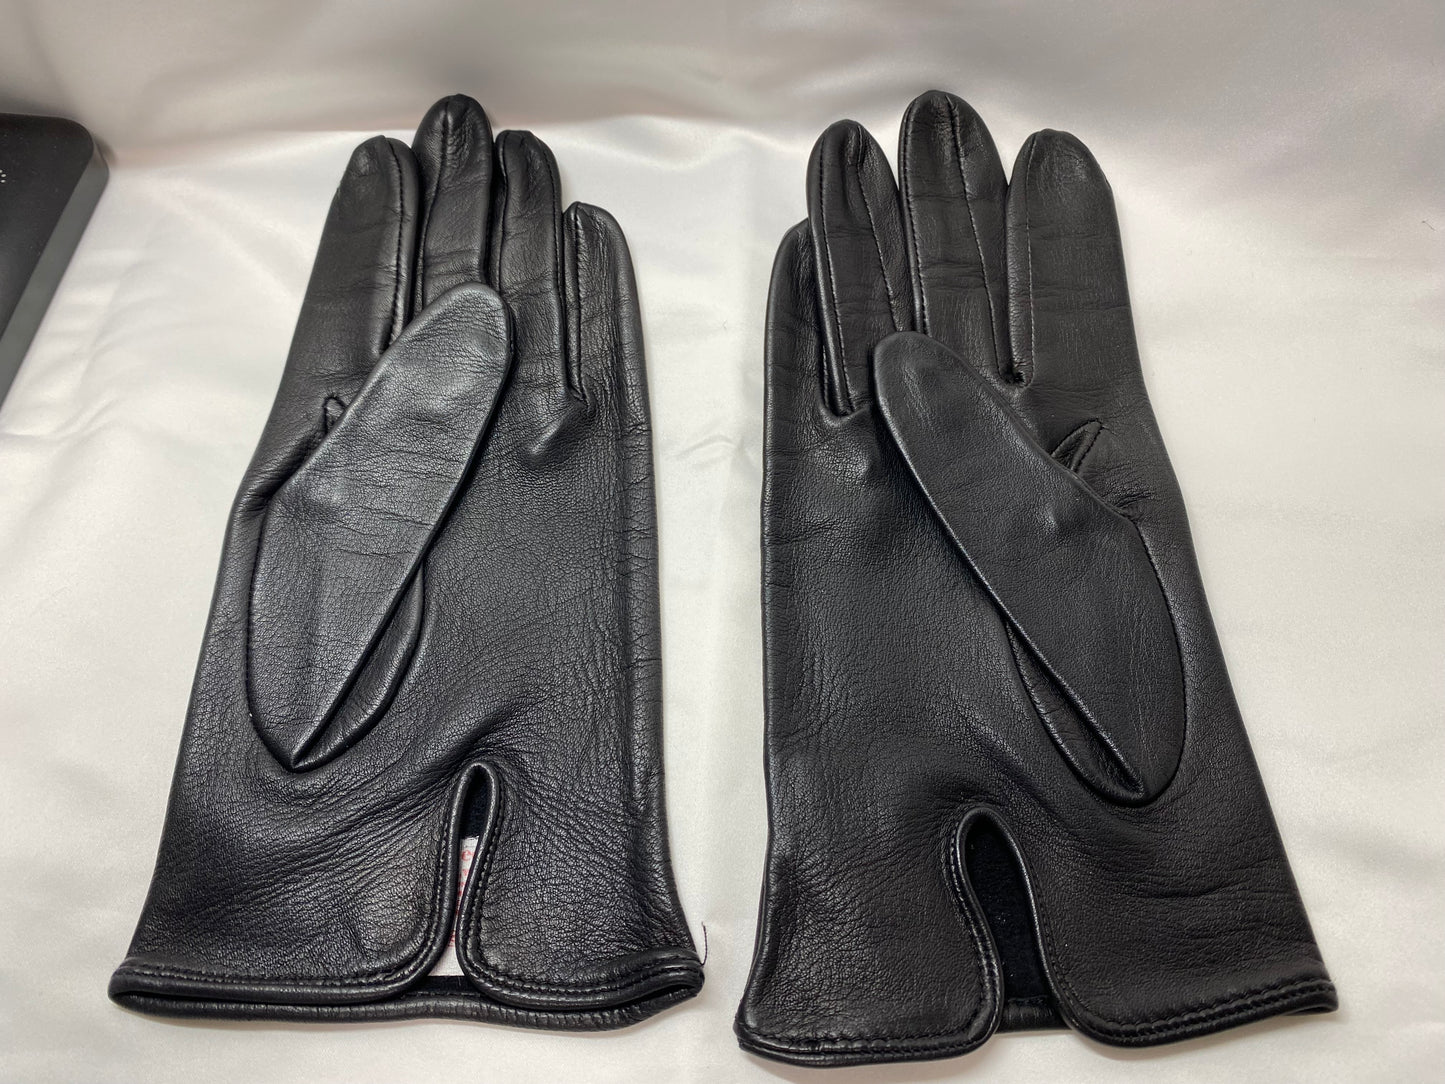 DENTS leather gloves, black.